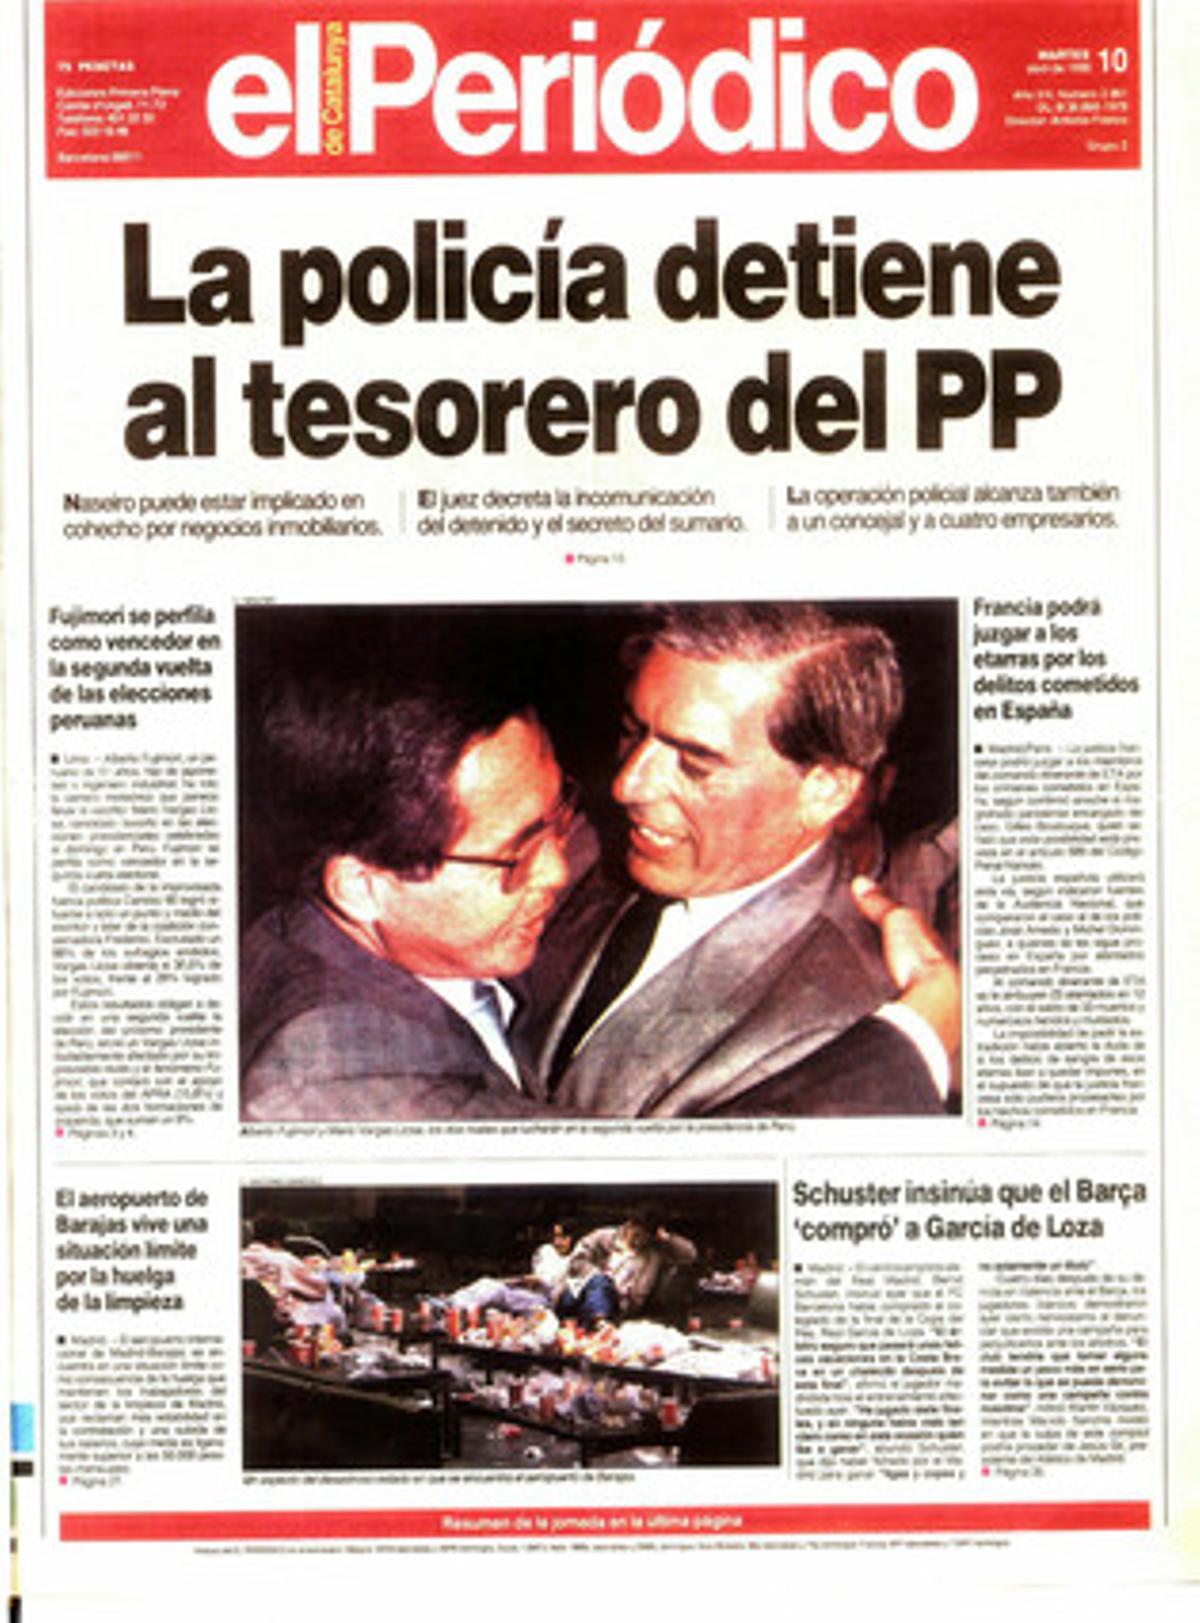 La policía detiene al tesorero del PP. Naseiro puede estar implicado en cohecho por negocios inmobiliarios.  Portada publicada el 10 de abril de 1990.